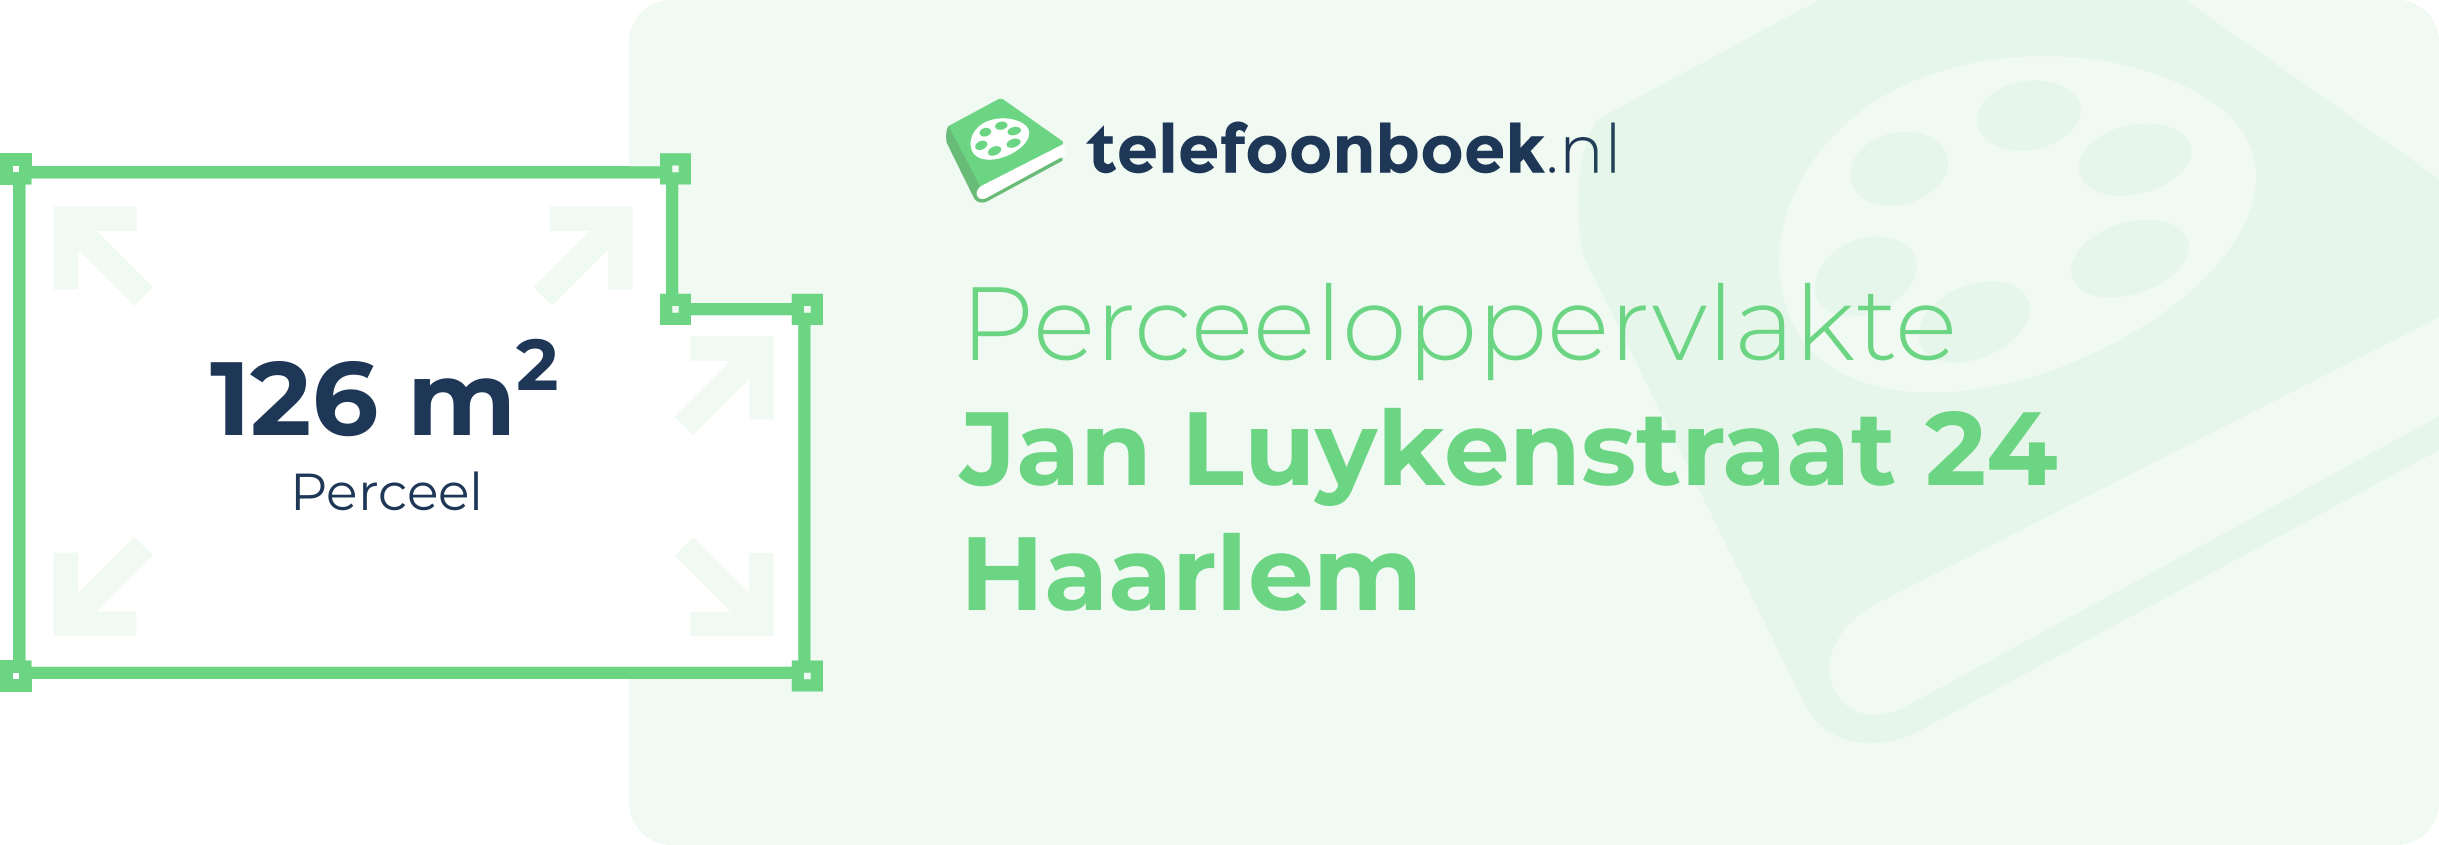 Perceeloppervlakte Jan Luykenstraat 24 Haarlem